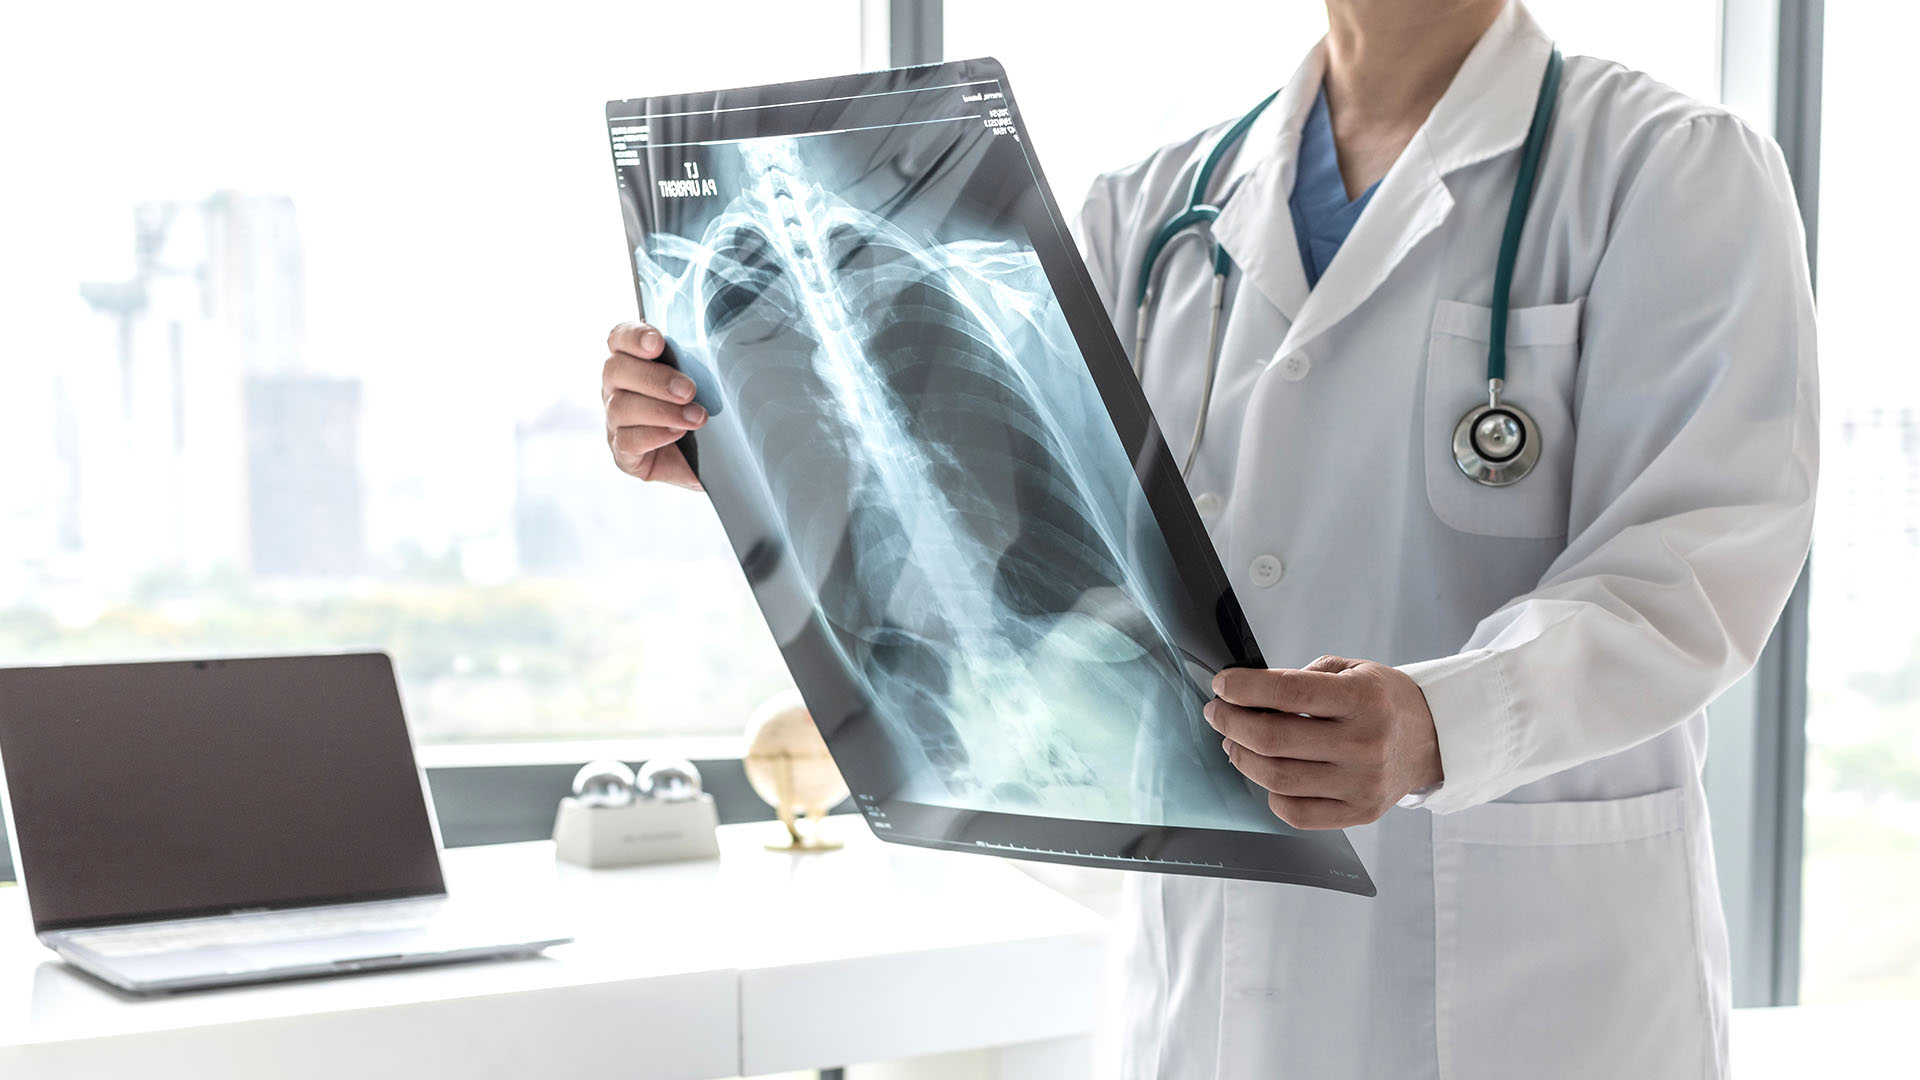 En el aparato respiratorio, la casi totalidad de los pacientes producen secreciones espesas y adherentes (Shutterstock)